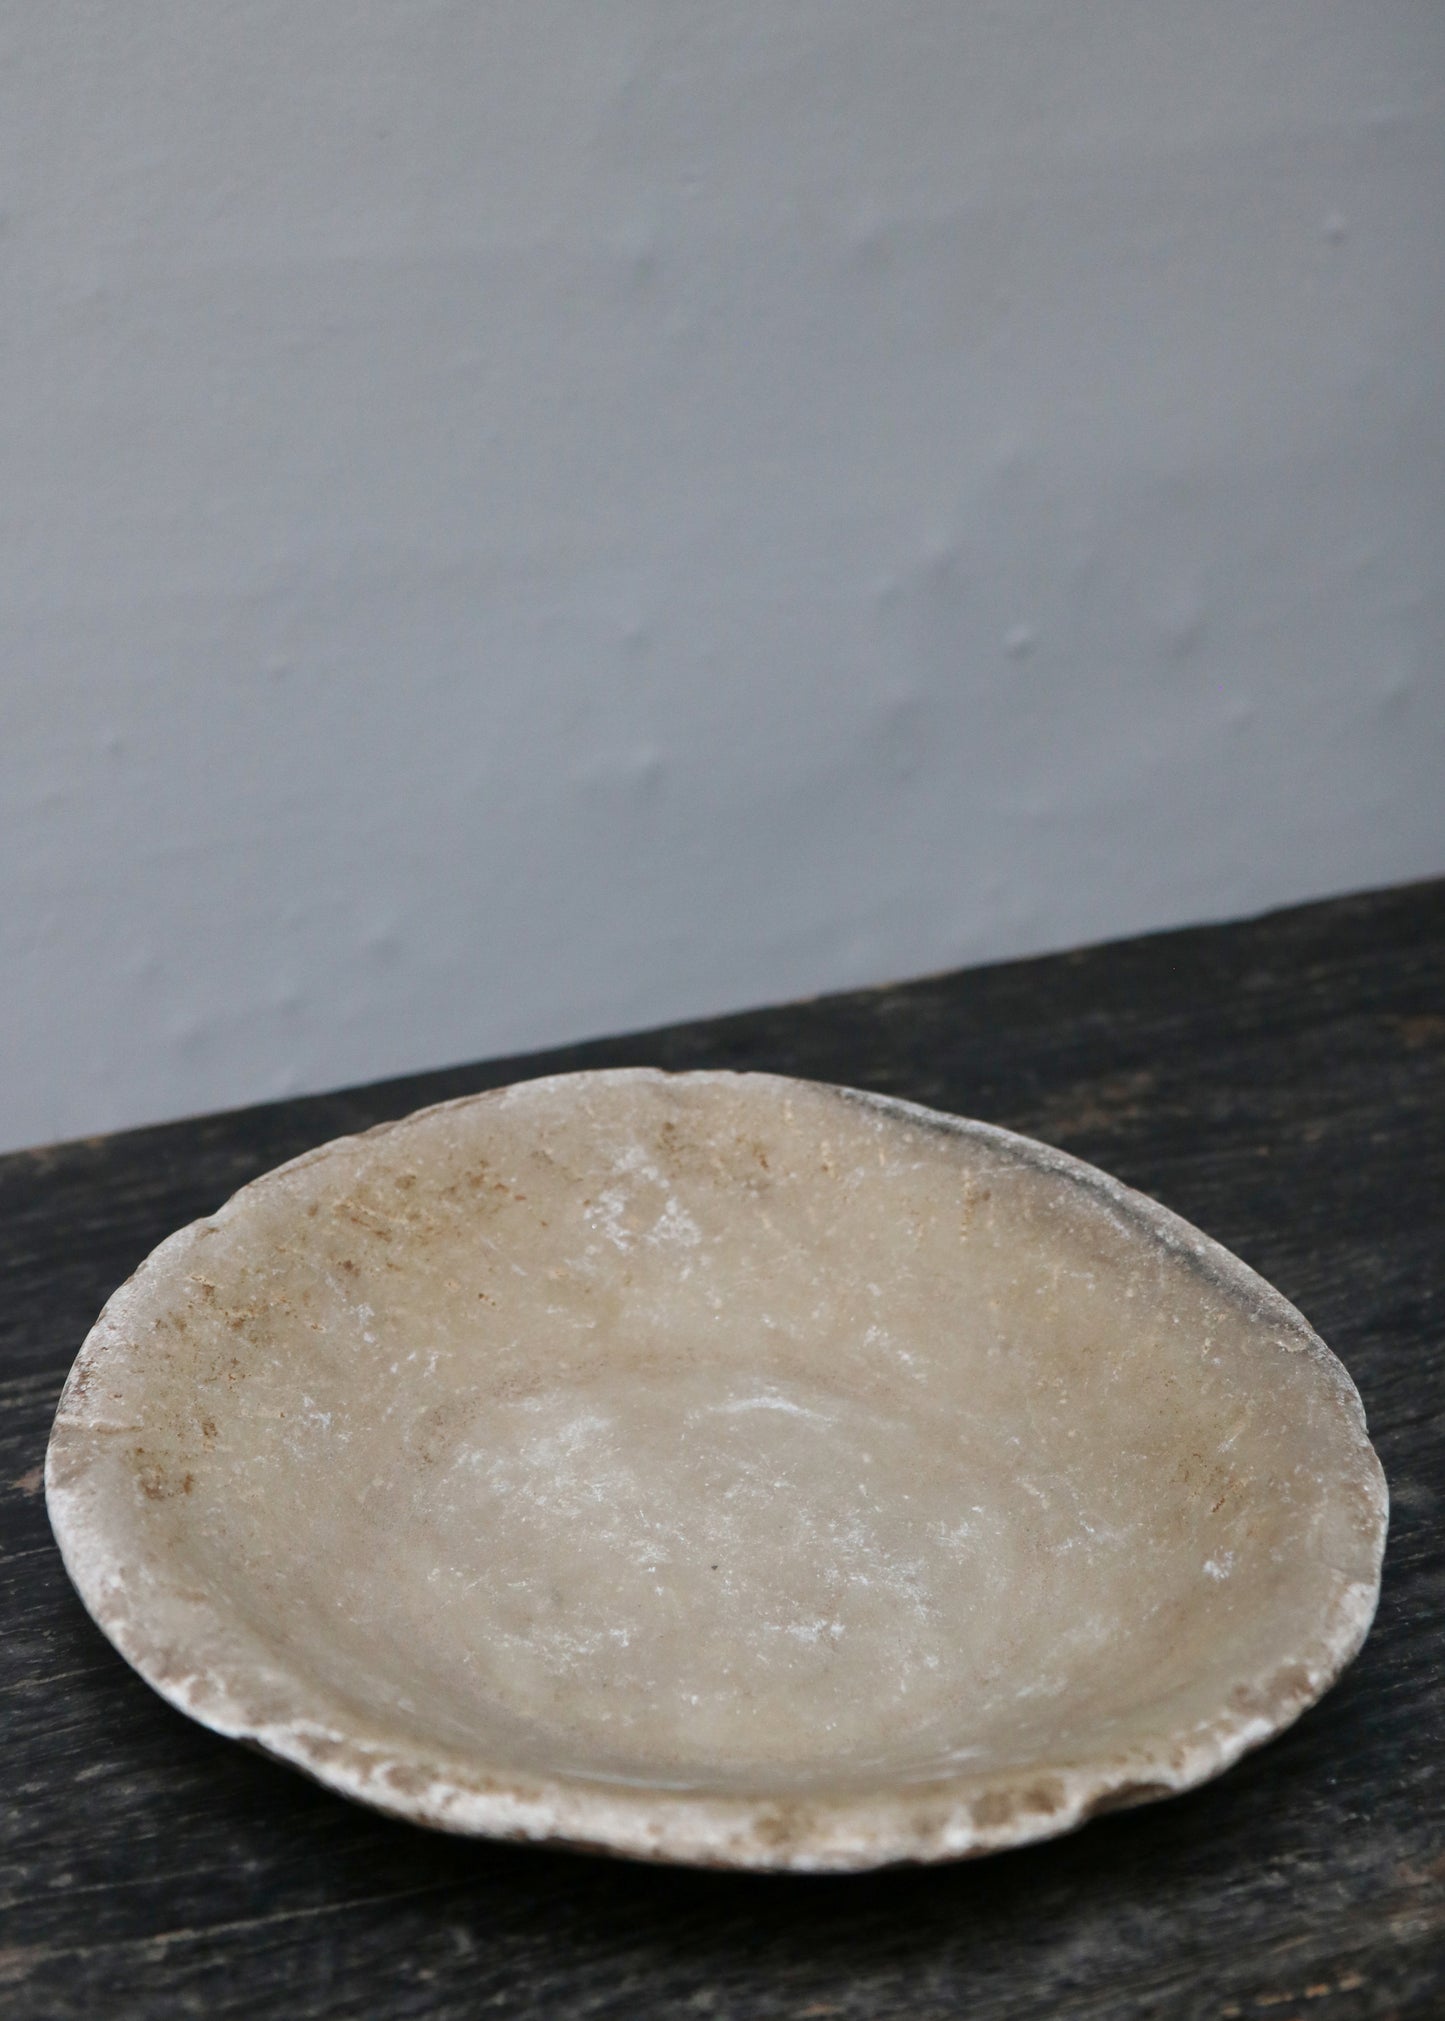 Unique Stone Bowl Large